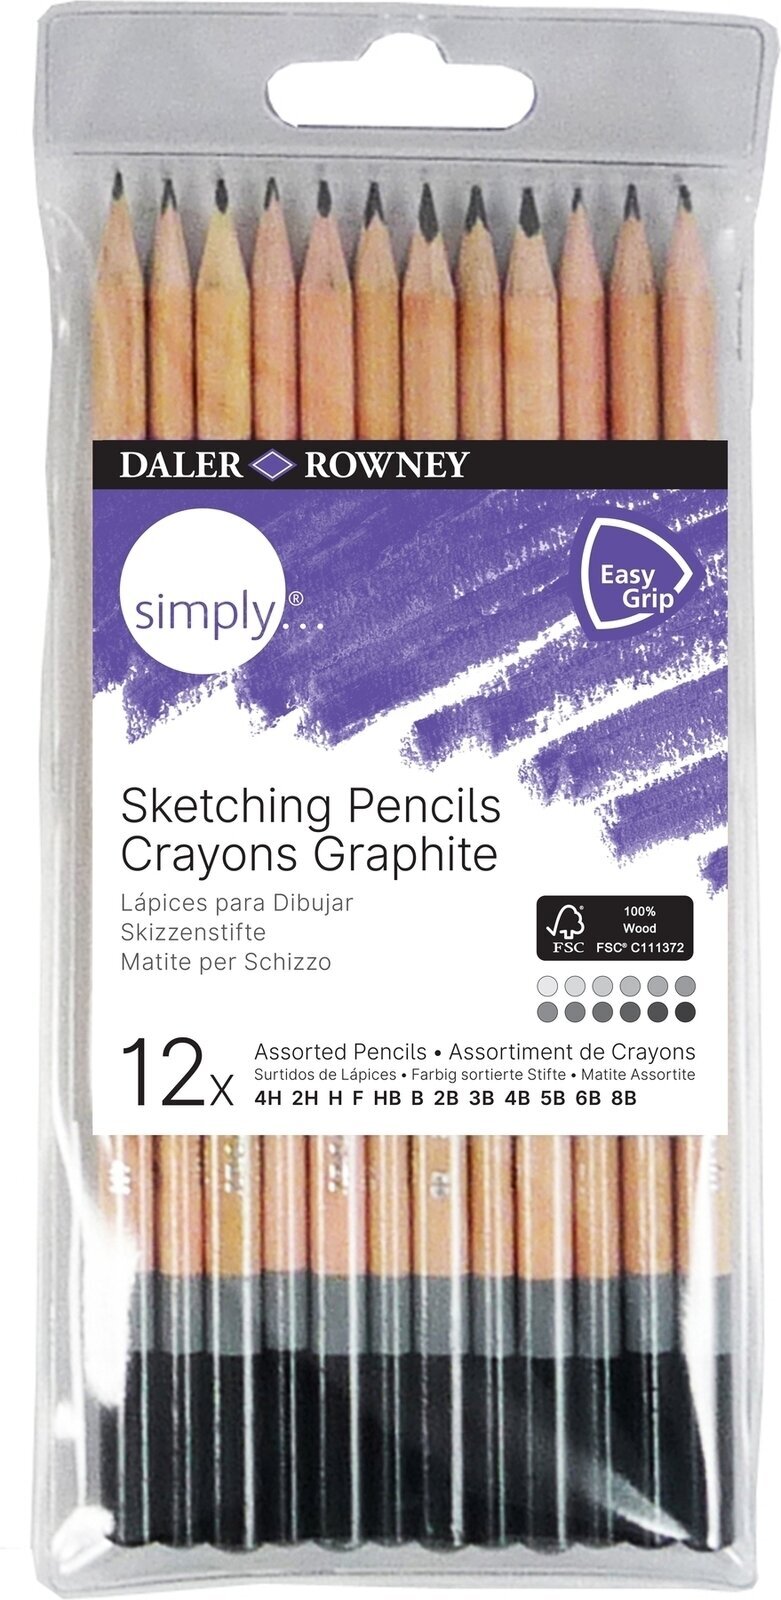 Grafietpotlood Daler Rowney Simply Sketching Pencils Set tekenpotloden voor kunstenaars 12 stuks